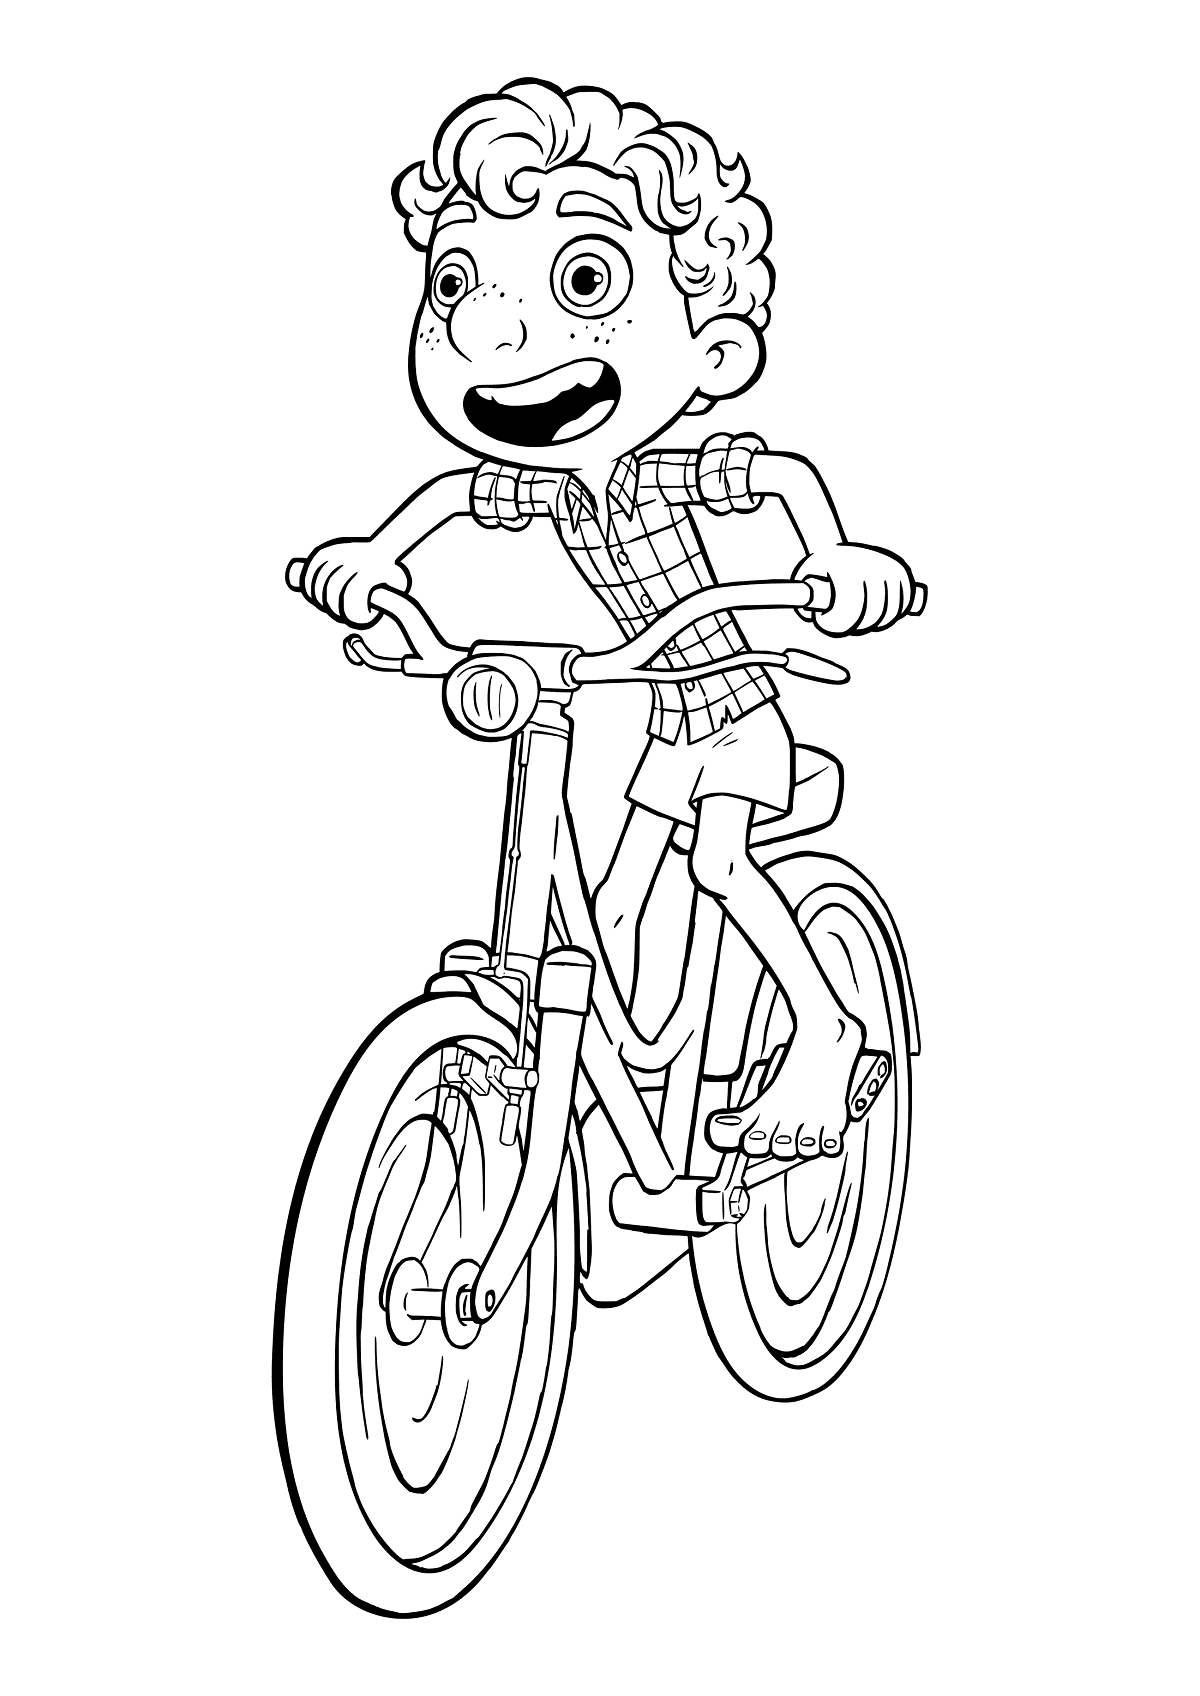 Luca andando en bicicleta desde Luca